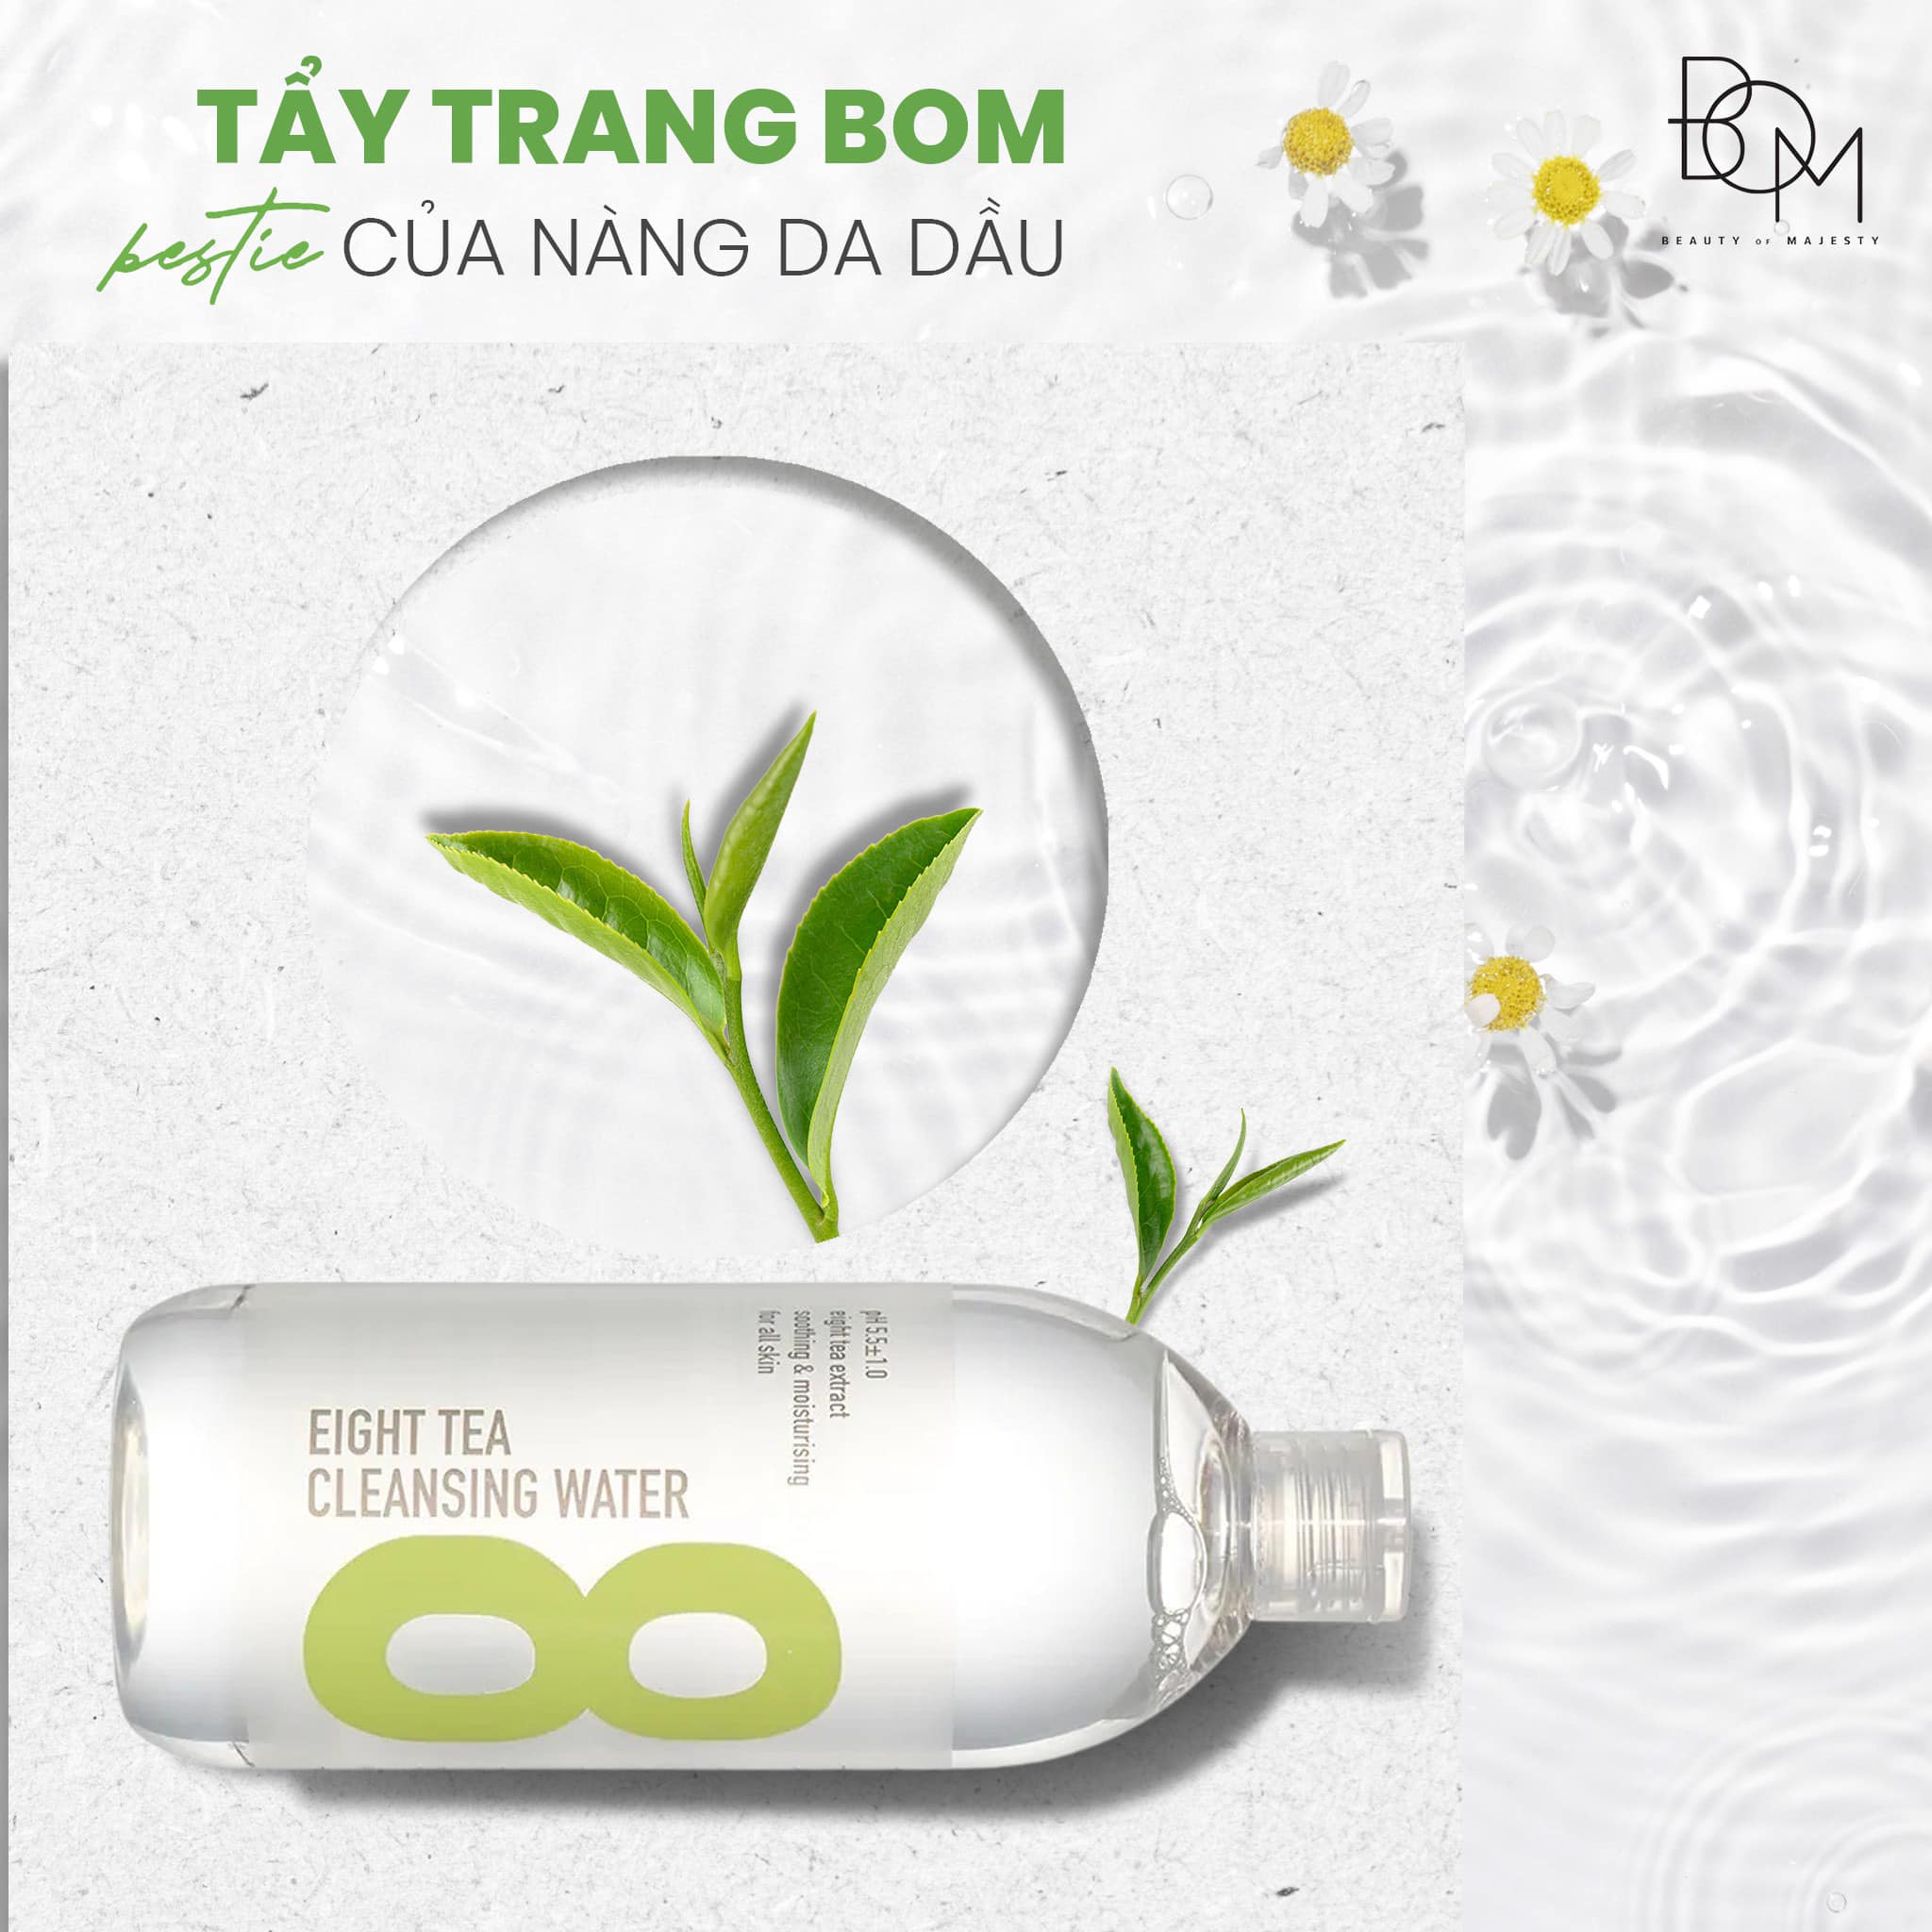 B.O.M EIGHT TEA CLEANSING WATER 500ML - một trong các loại nước tẩy trang giúp dưỡng ẩm, làm mềm mại cho da được yêu thích nhất